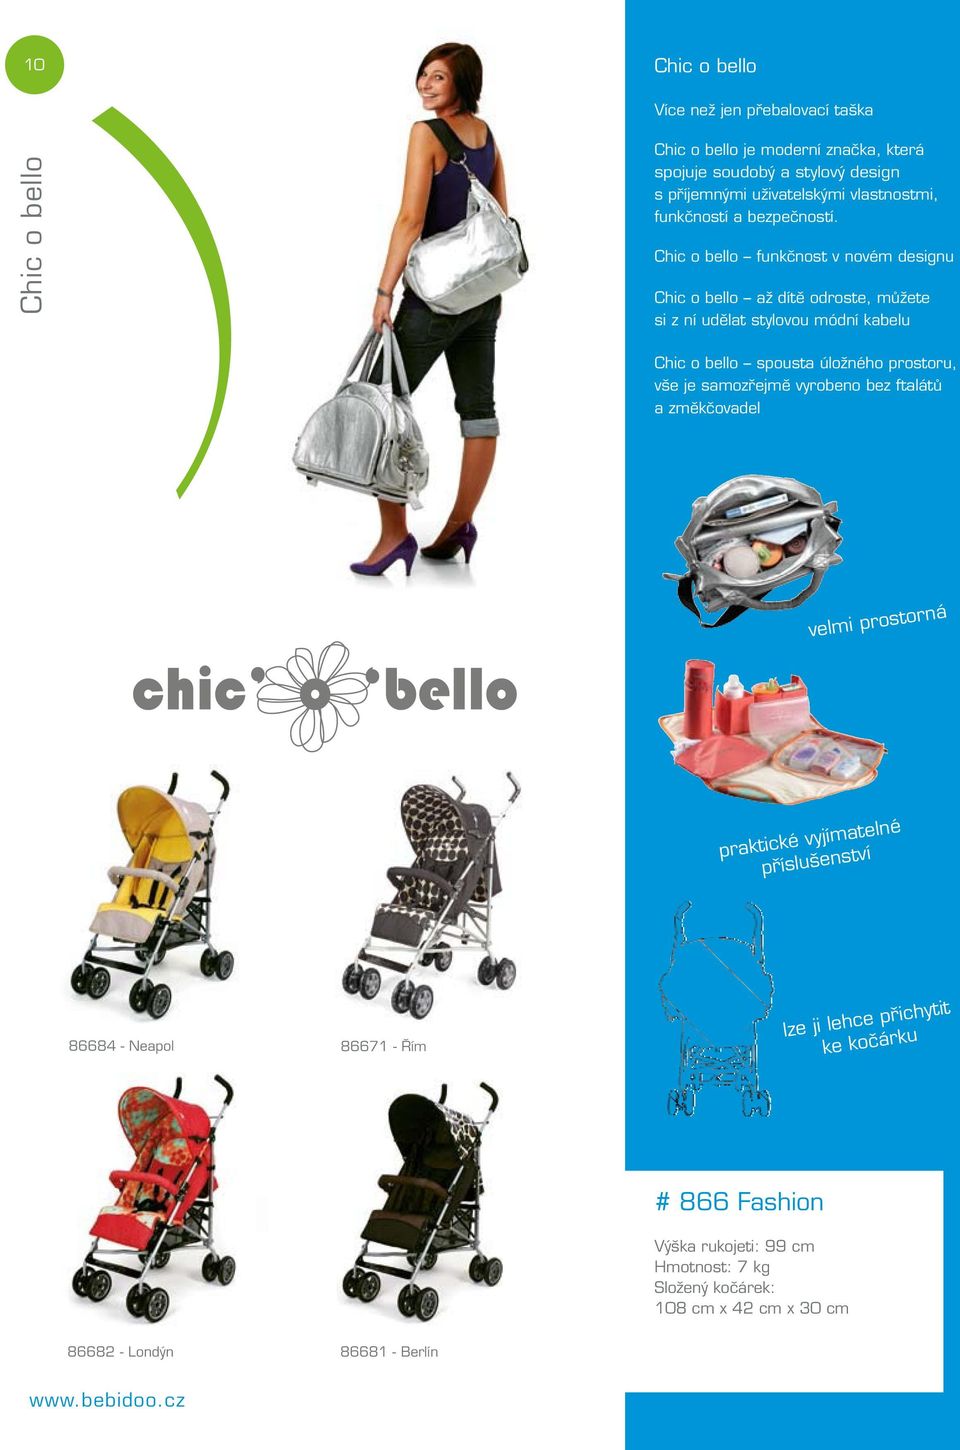 Chic o bello funkčnost v novém designu Chic o bello až dítě odroste, můžete si z ní udělat stylovou módní kabelu Chic o bello spousta úložného prostoru,